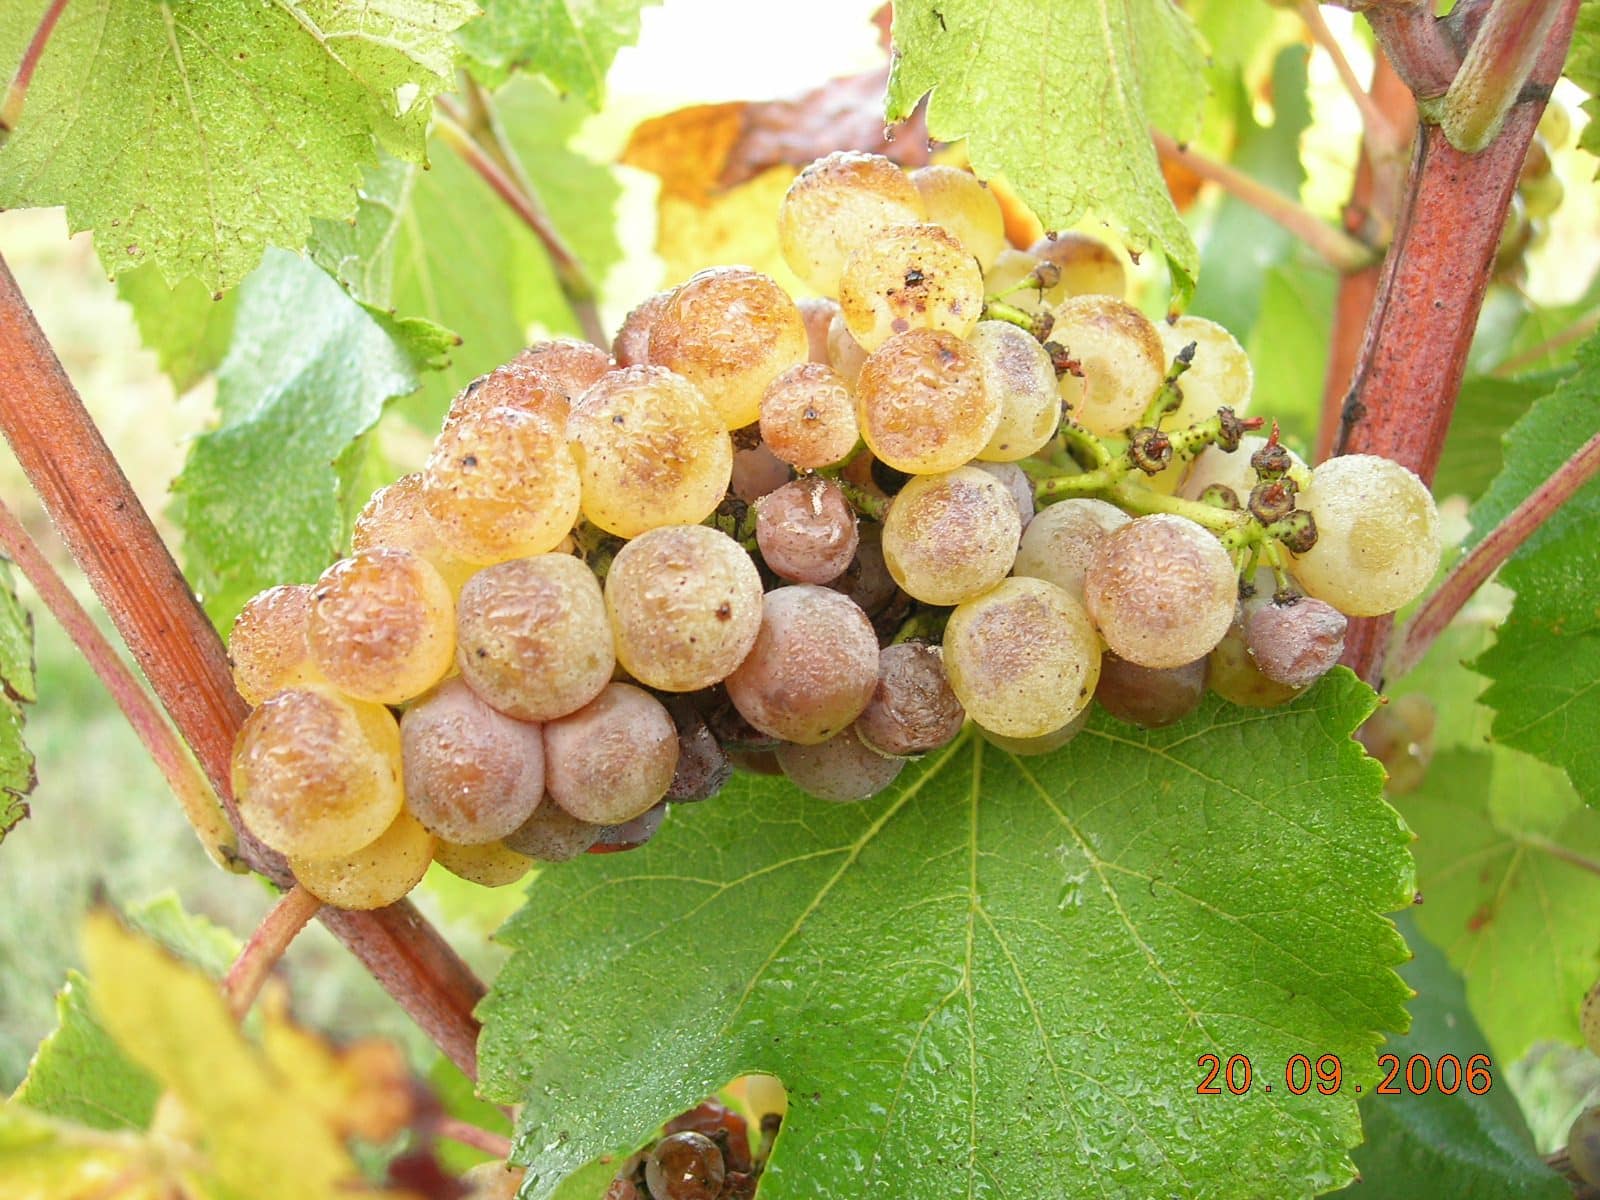 Vigne Sud-Ouest Fronton raisin blanc Photo 2